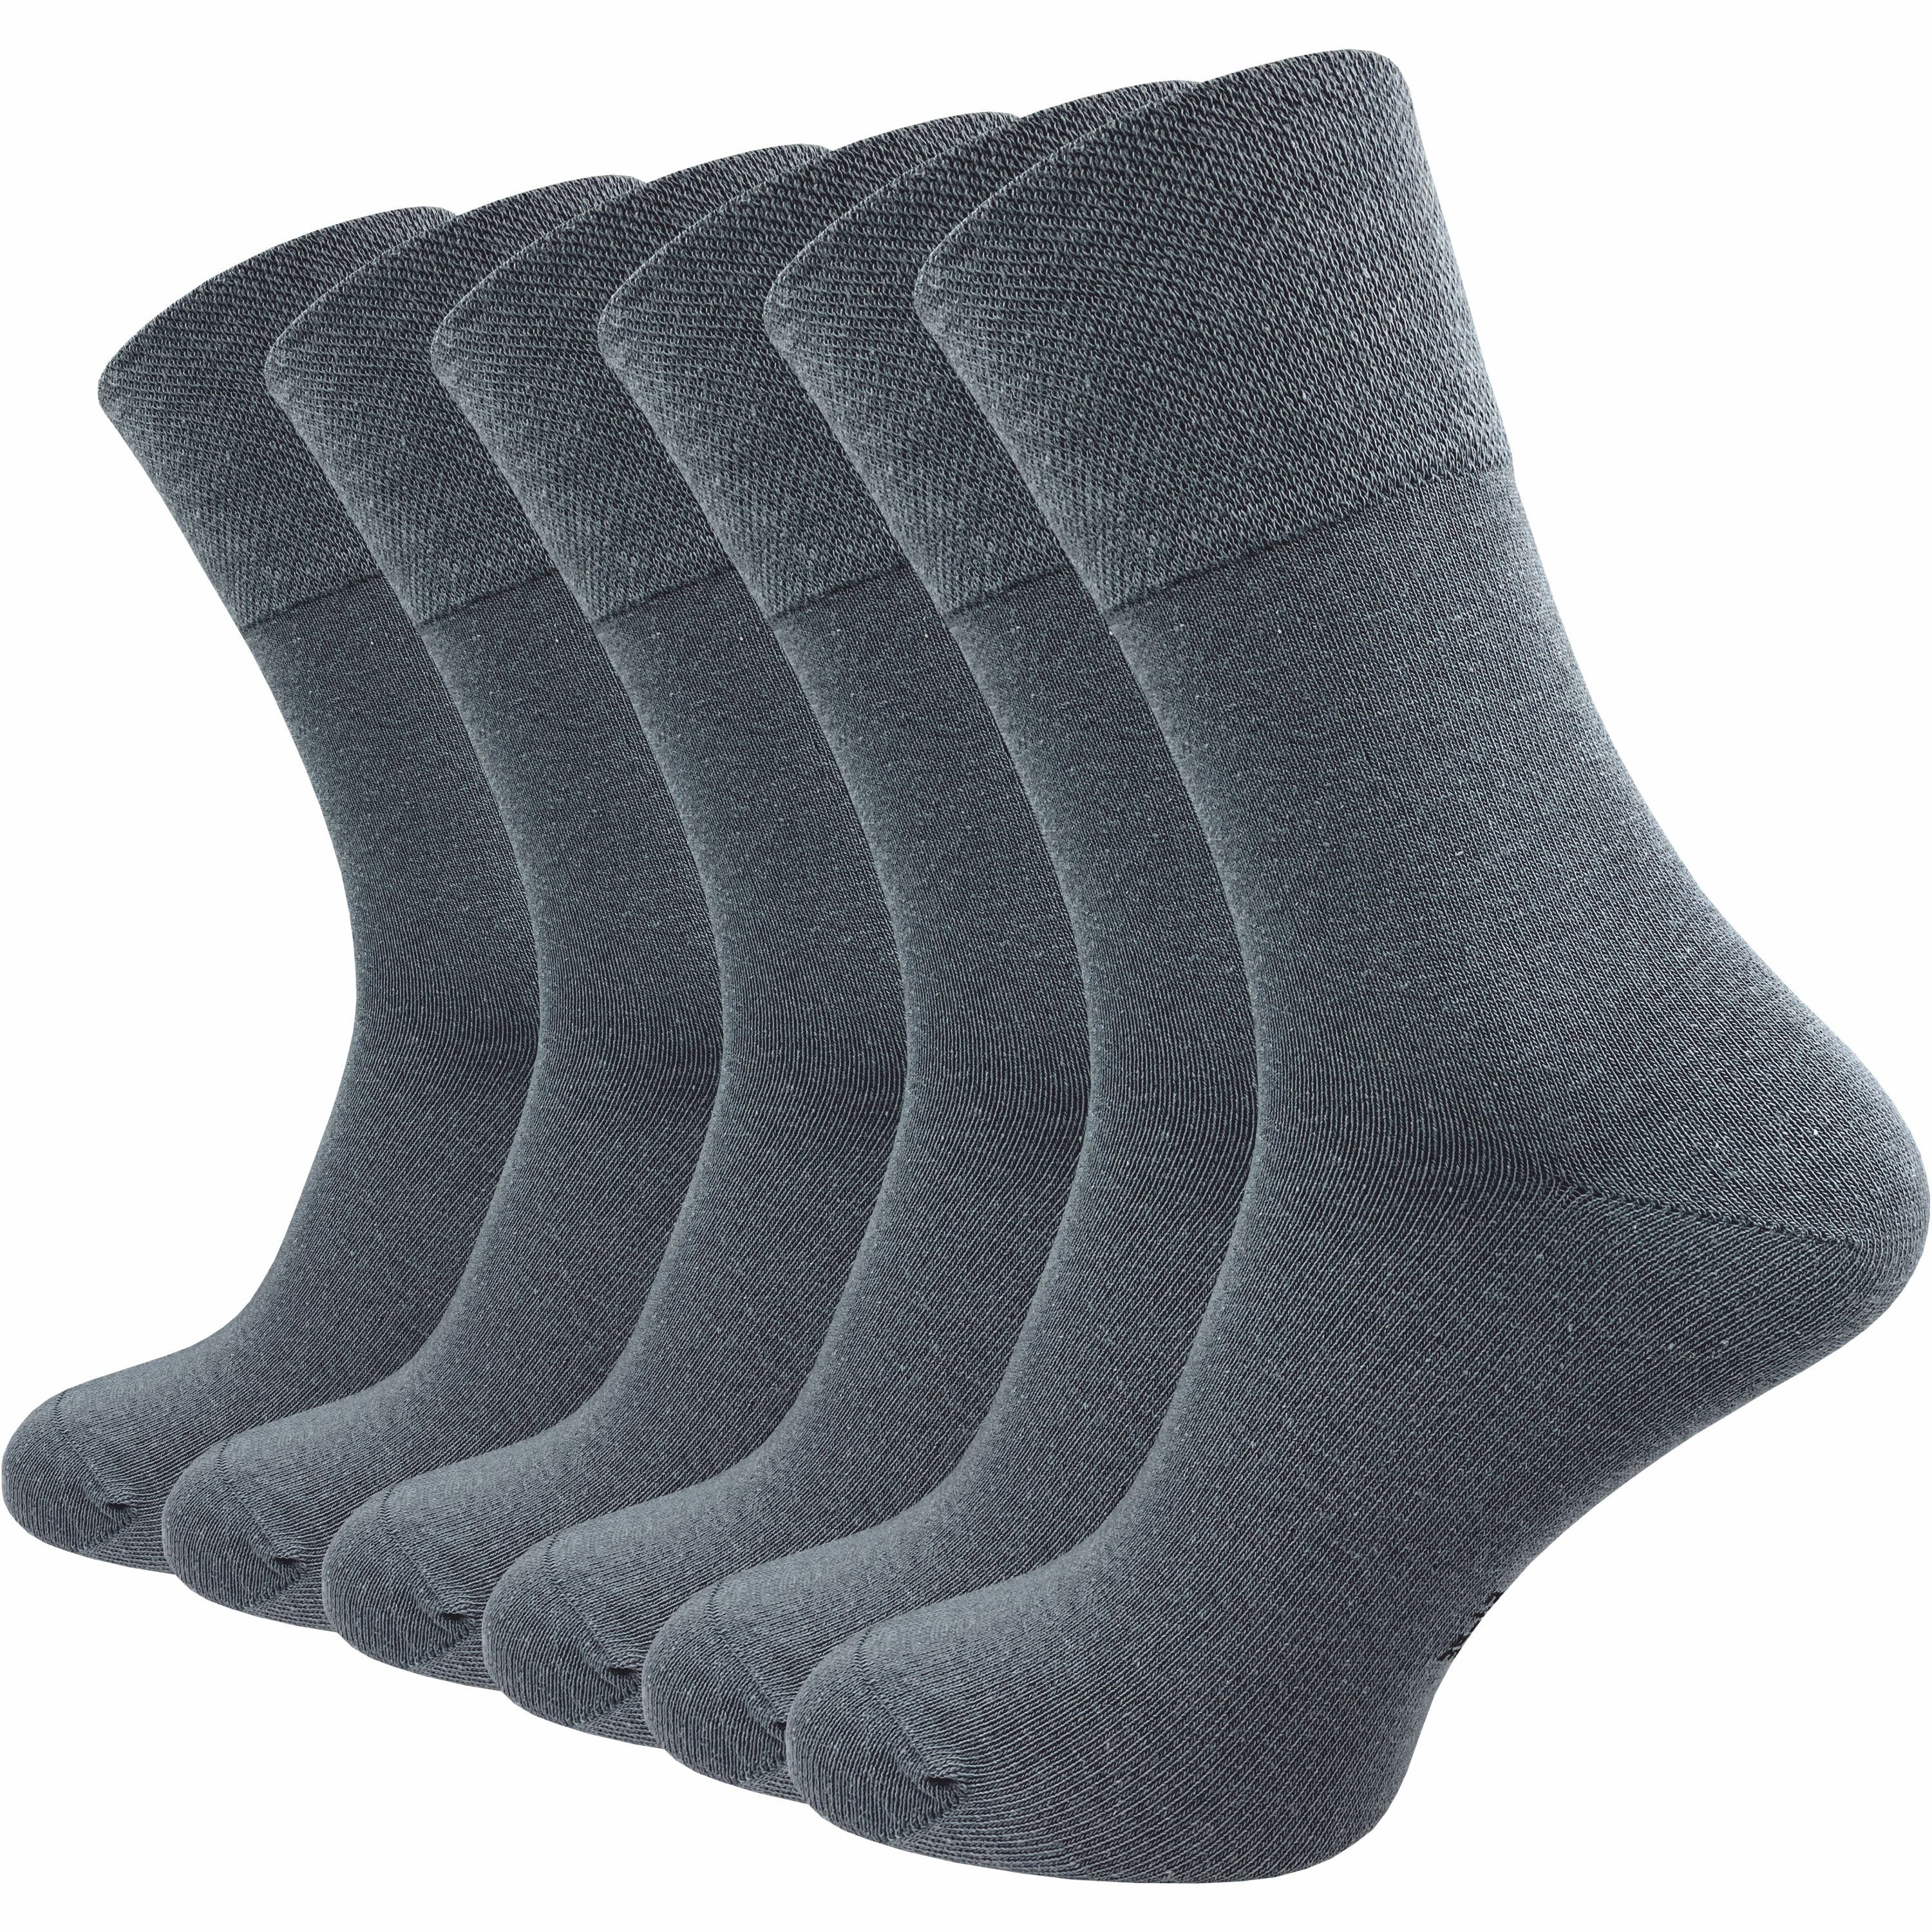 GAWILO Diabetikersocken für Damen, ohne Gummidruck & ohne drückende Naht - Business Socke (6 Paar) extra breiter Piquet-Strick am Komfortbund; in schwarz, grau & weitere dunkelgrau